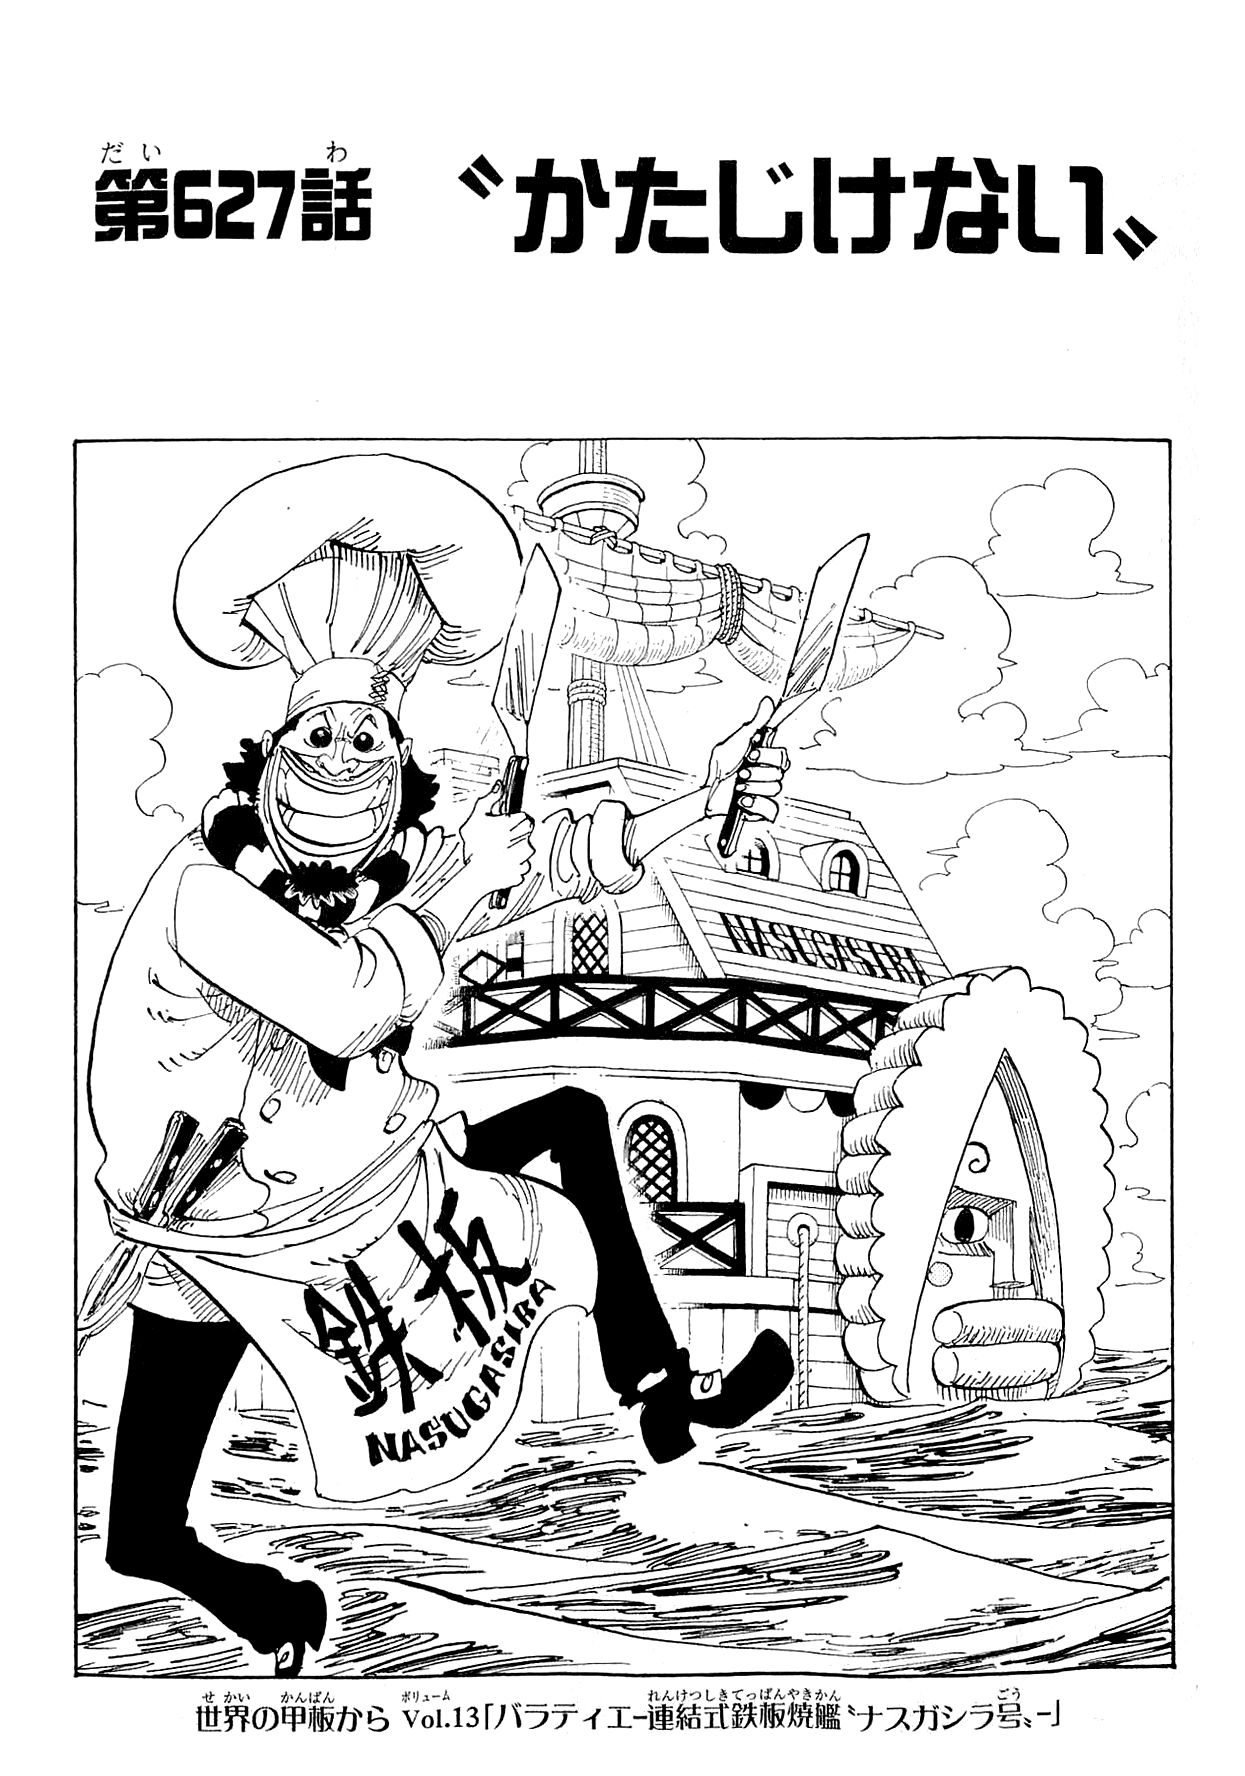 Chapitre 627 One Piece Encyclopedie Fandom